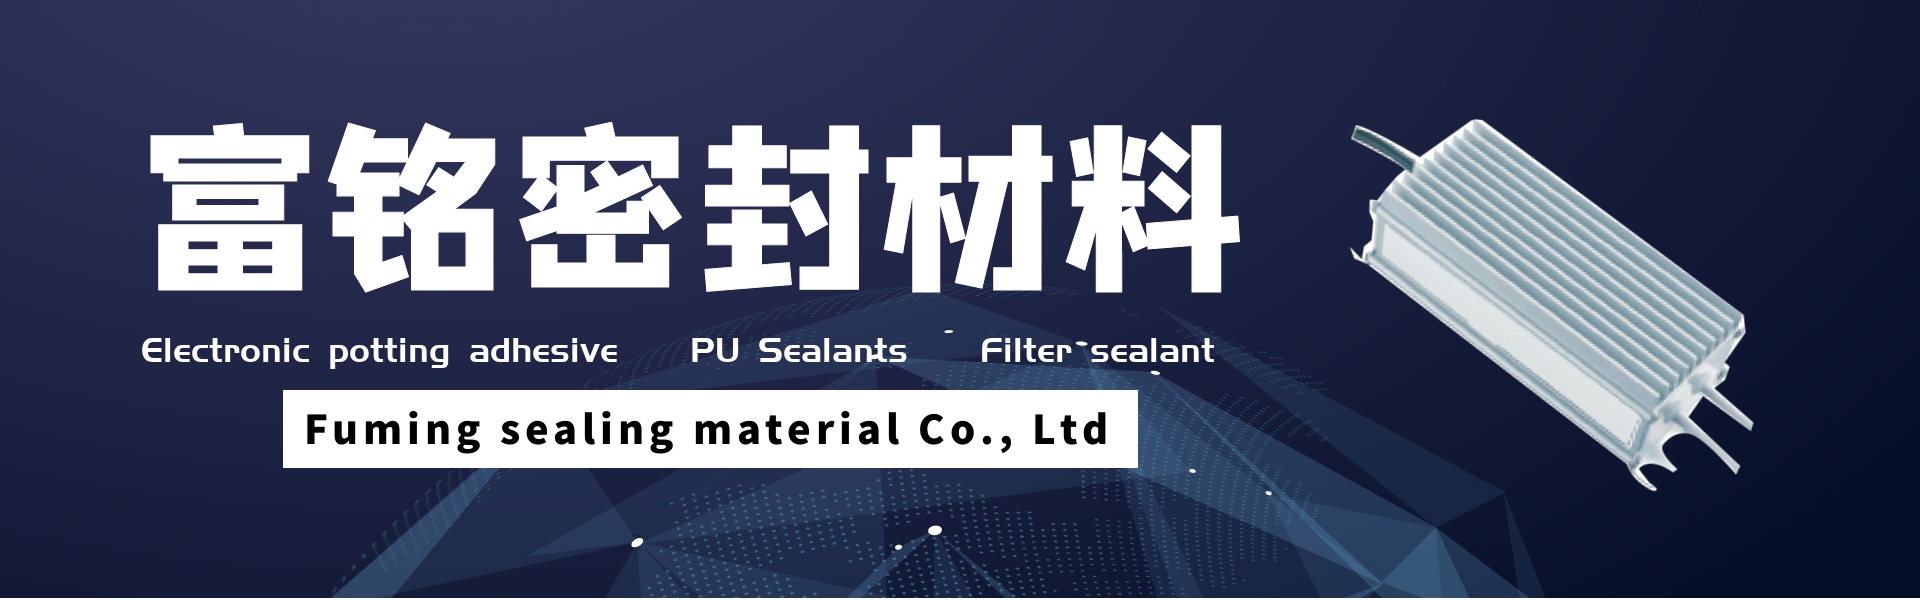 greamachán potaithe leictreonach, séalaithe pu, séalaithe scagaire,Dongguan fuming sealing material Co., Ltd